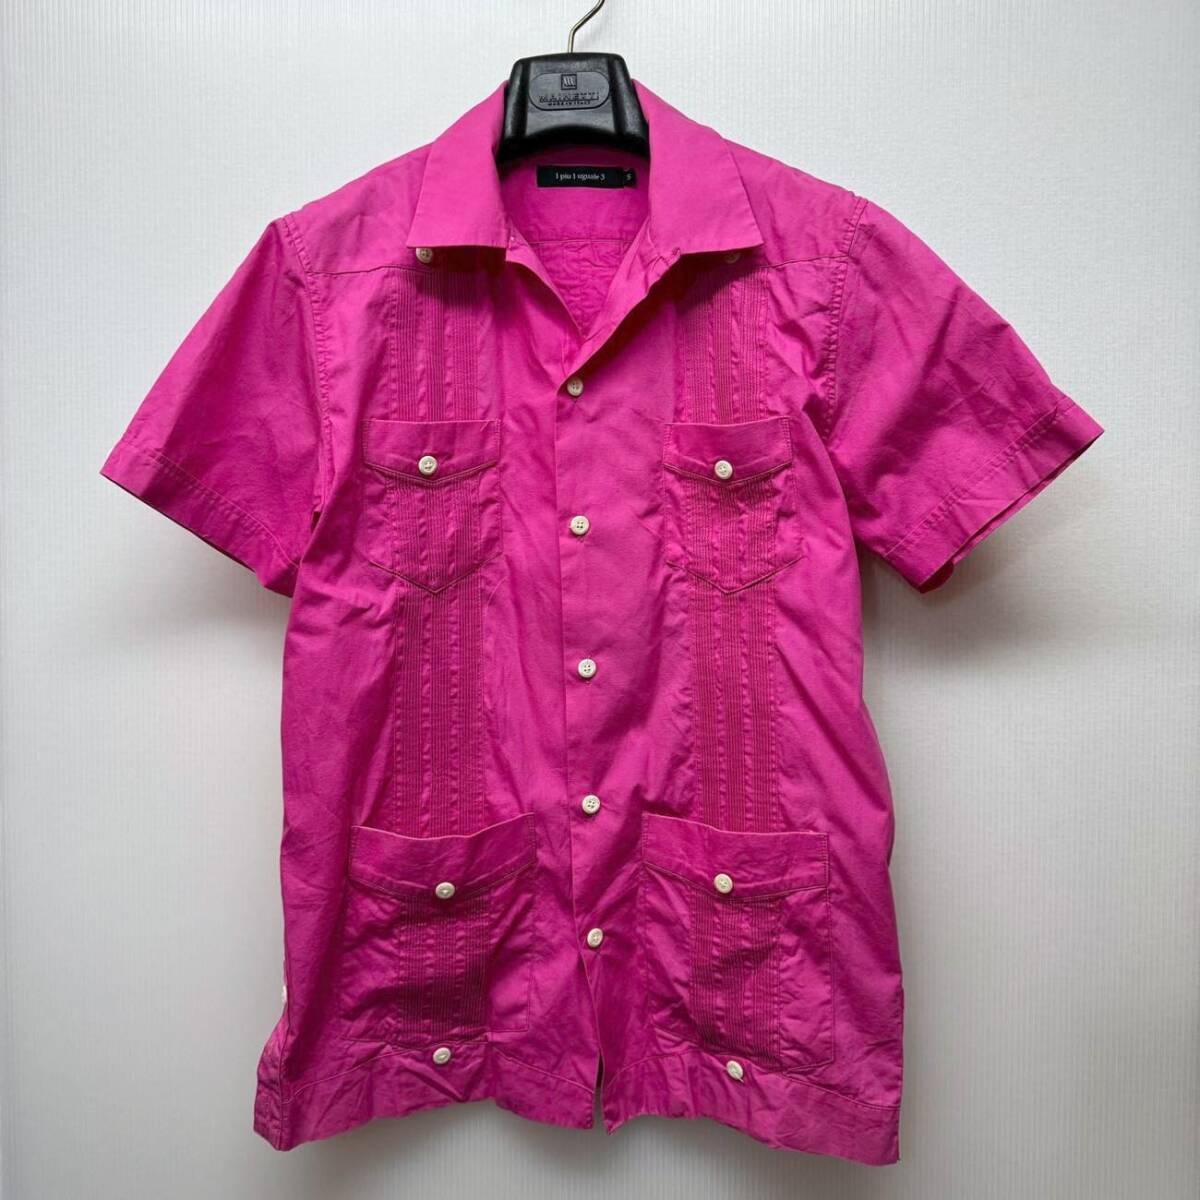 1piu1uguale3 ... рубашка    рекомендуемая розничная цена 48,600  йен  6(XL)  стоимость доставки 230  йен 〜 ... CUBA SHIRT AKM wjk ... розовый  ...